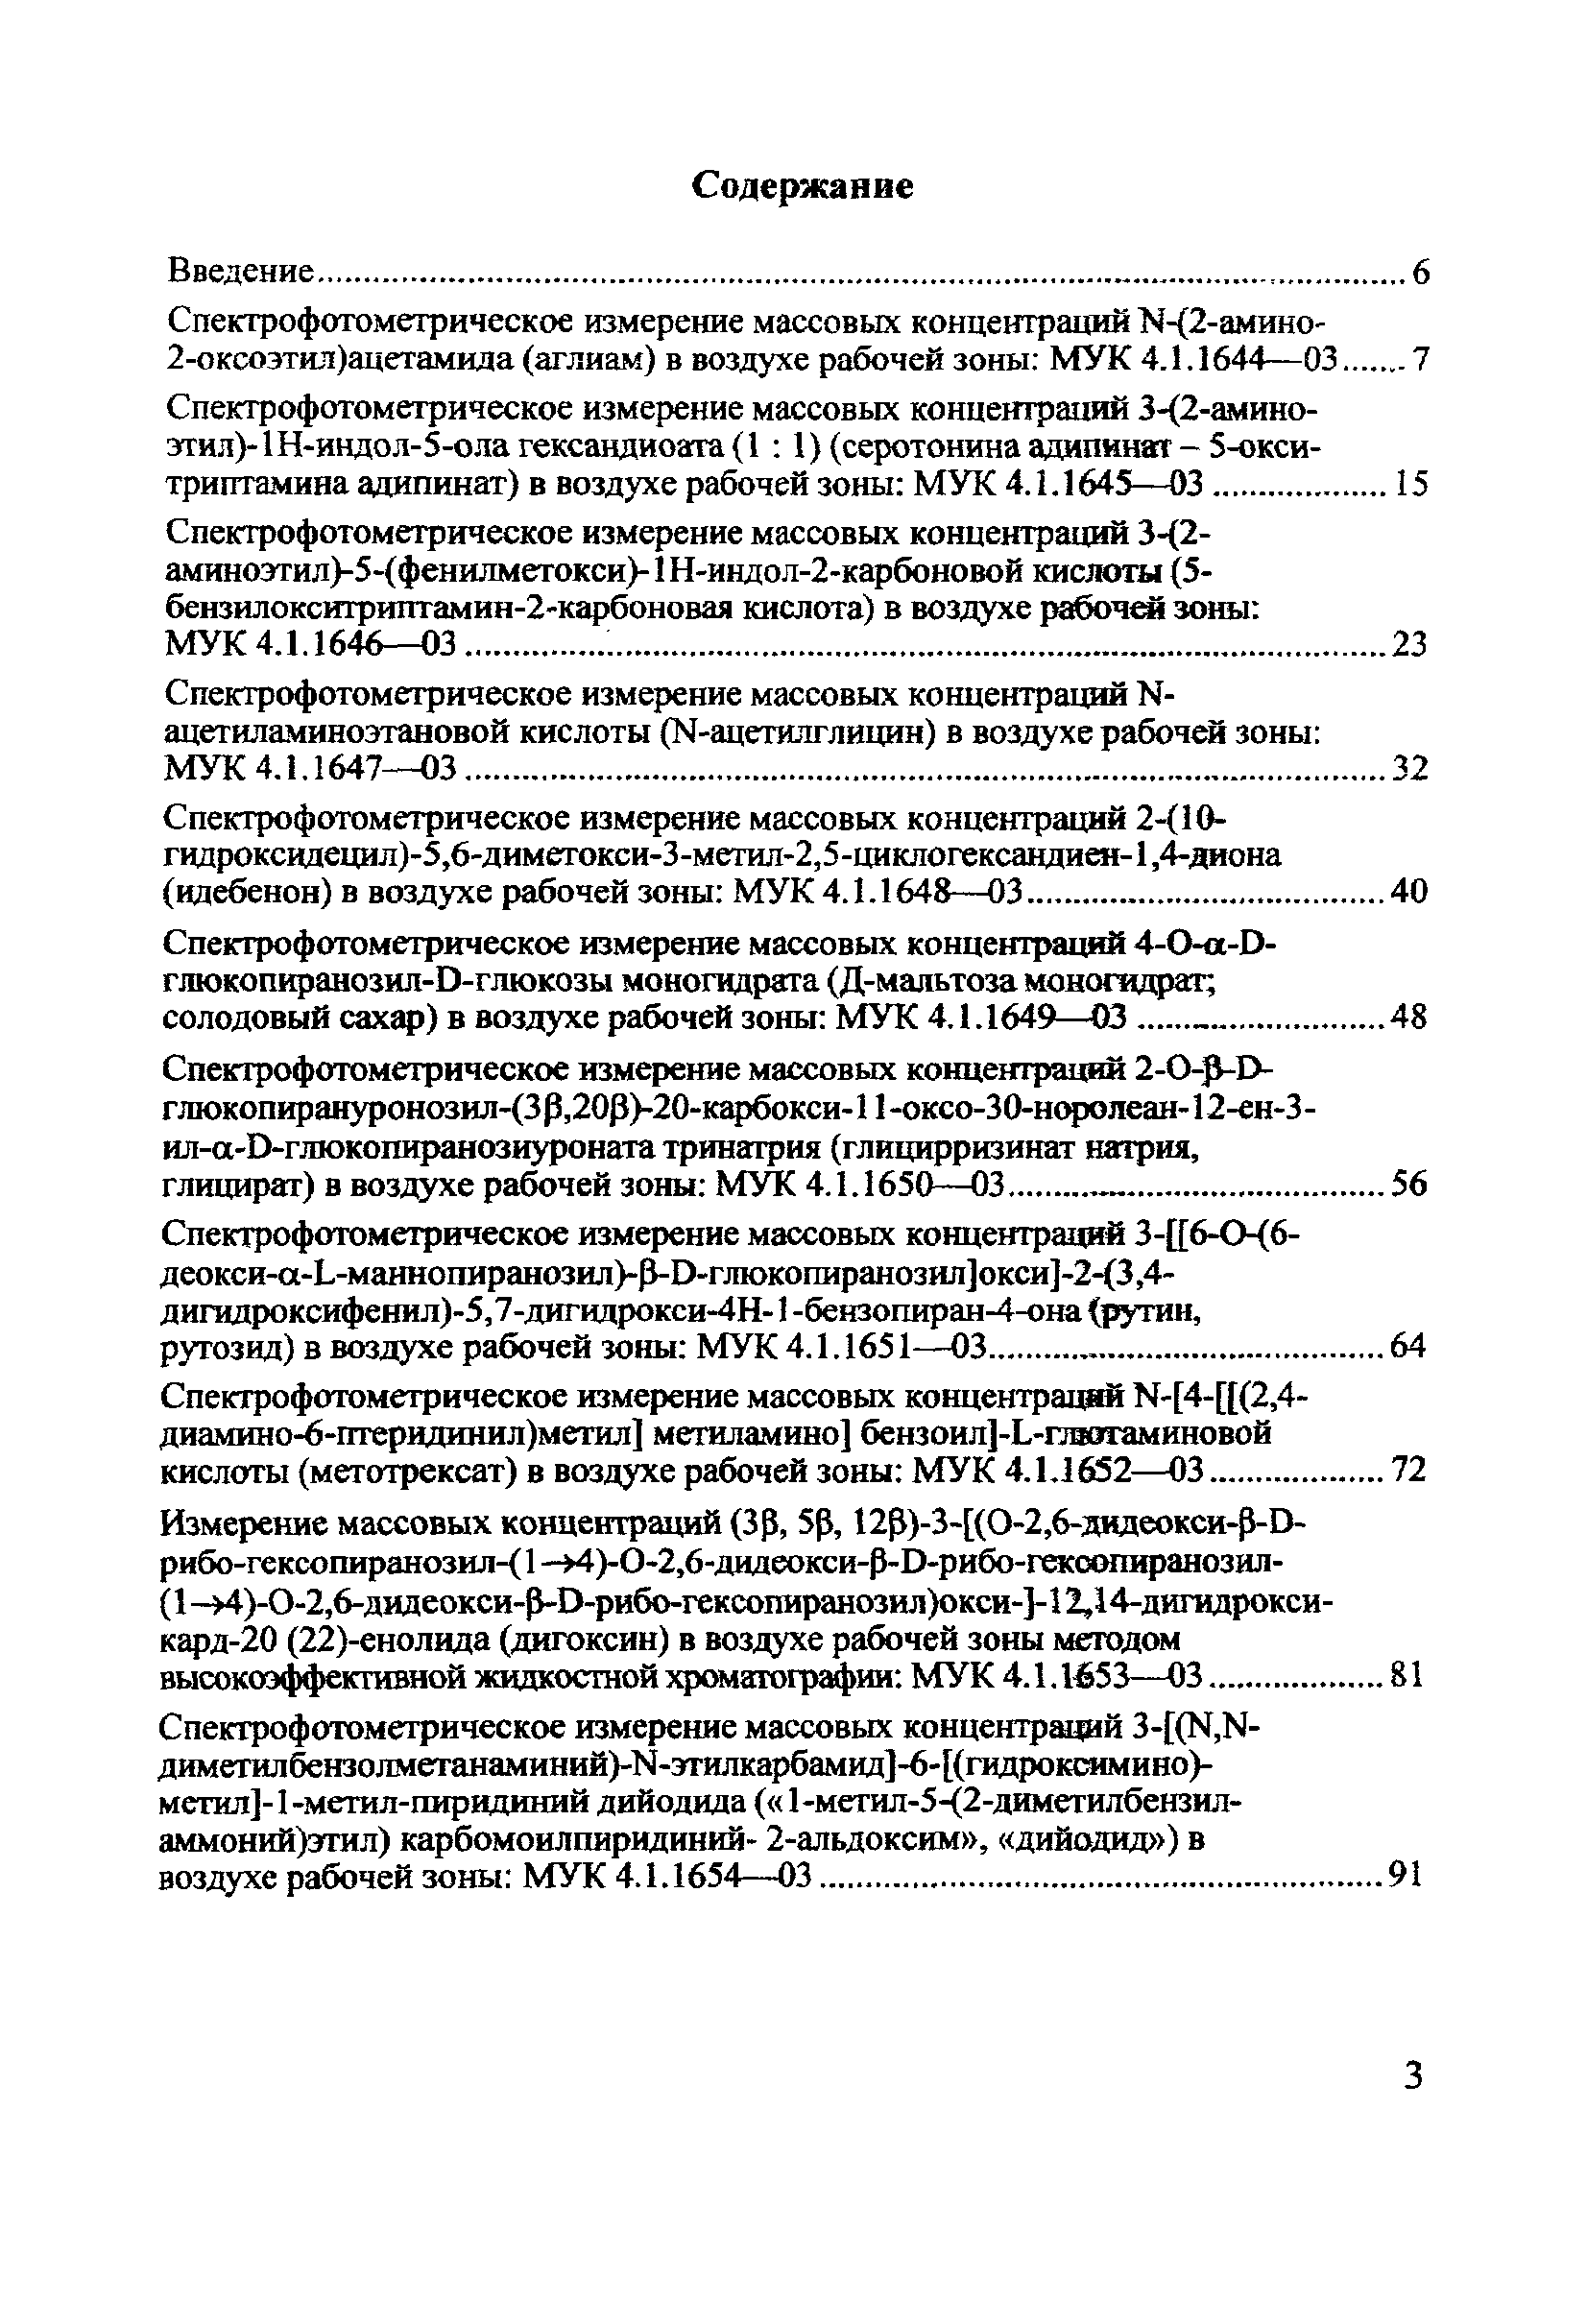 МУК 4.1.1657-03